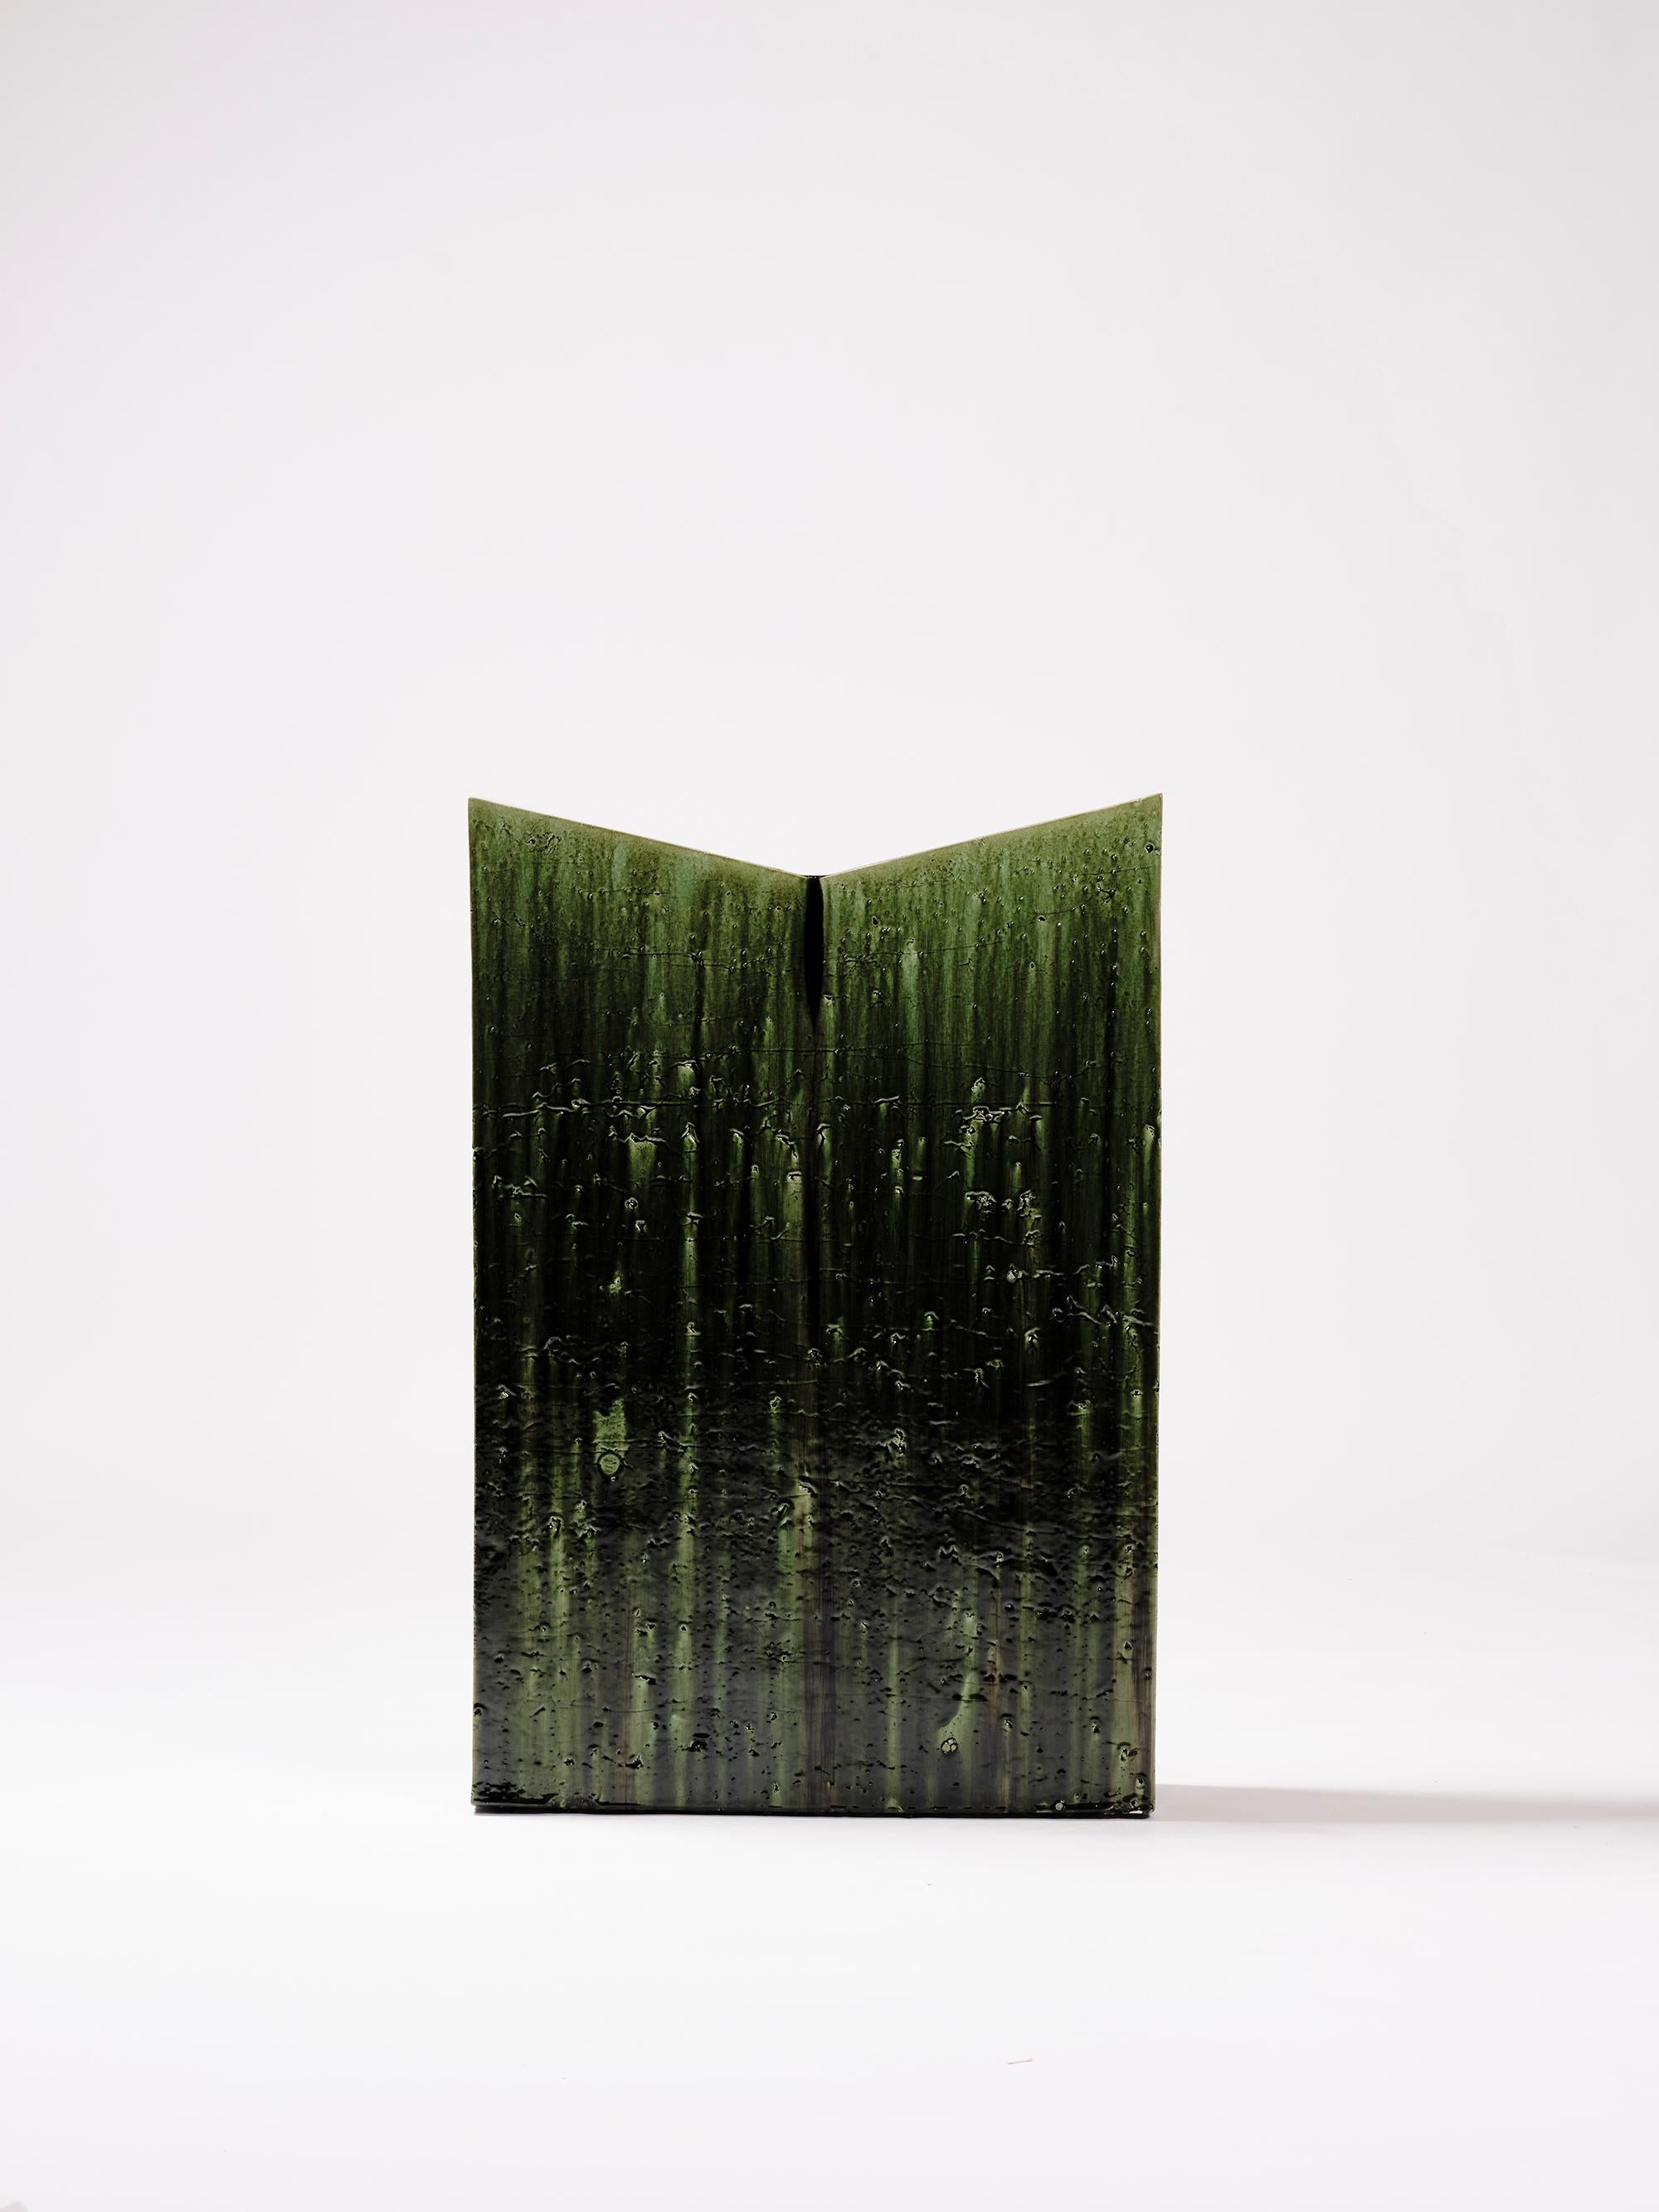 Émaillé Lecterne de lecture contemporaine en céramique émaillée vert foncé moderne en vente